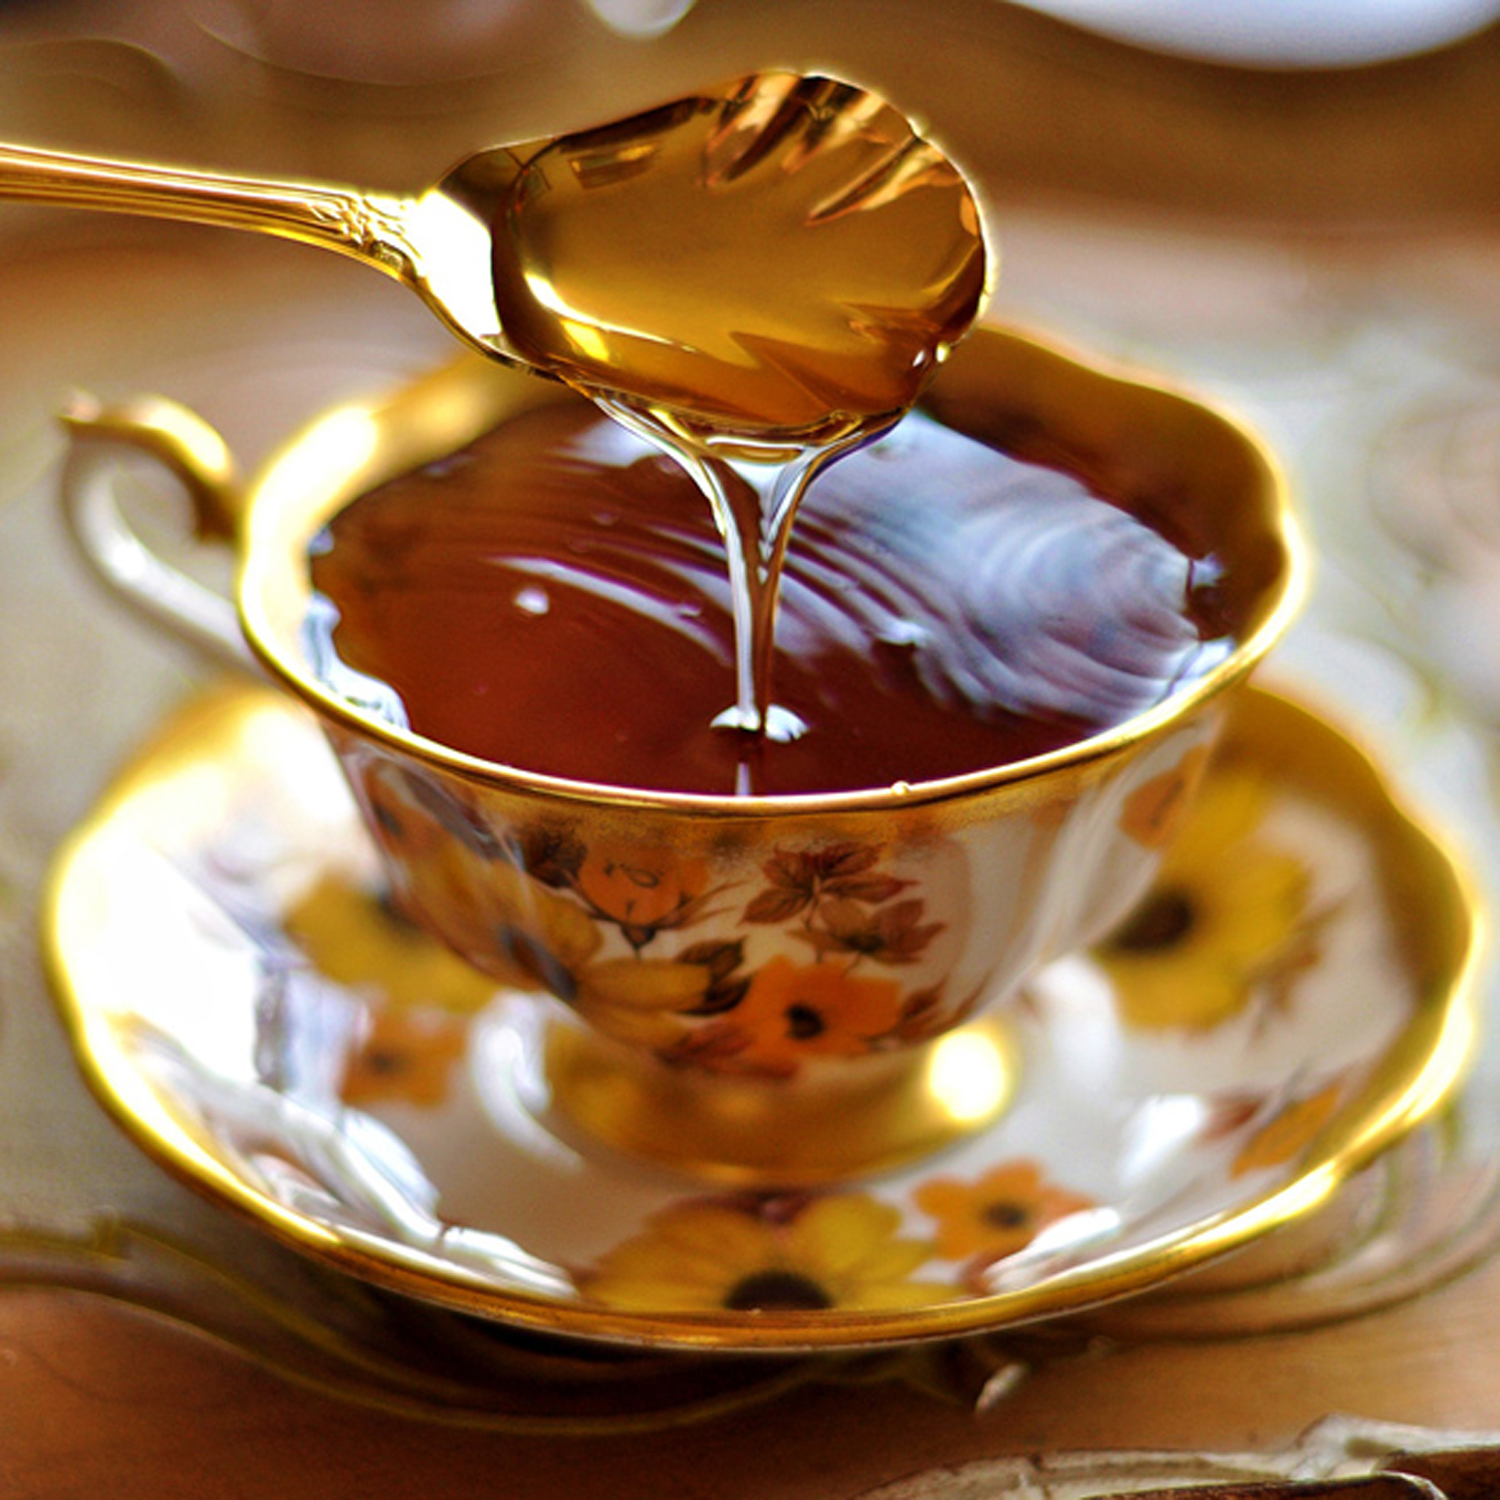 Το μέλι είναι πλούσιο σε υδατάνθρακες, πρωτεΐνες, βιταμίνες του συμπλέγματος Β, αμινοξέα, ένζυμα, ιχνοστοιχεία